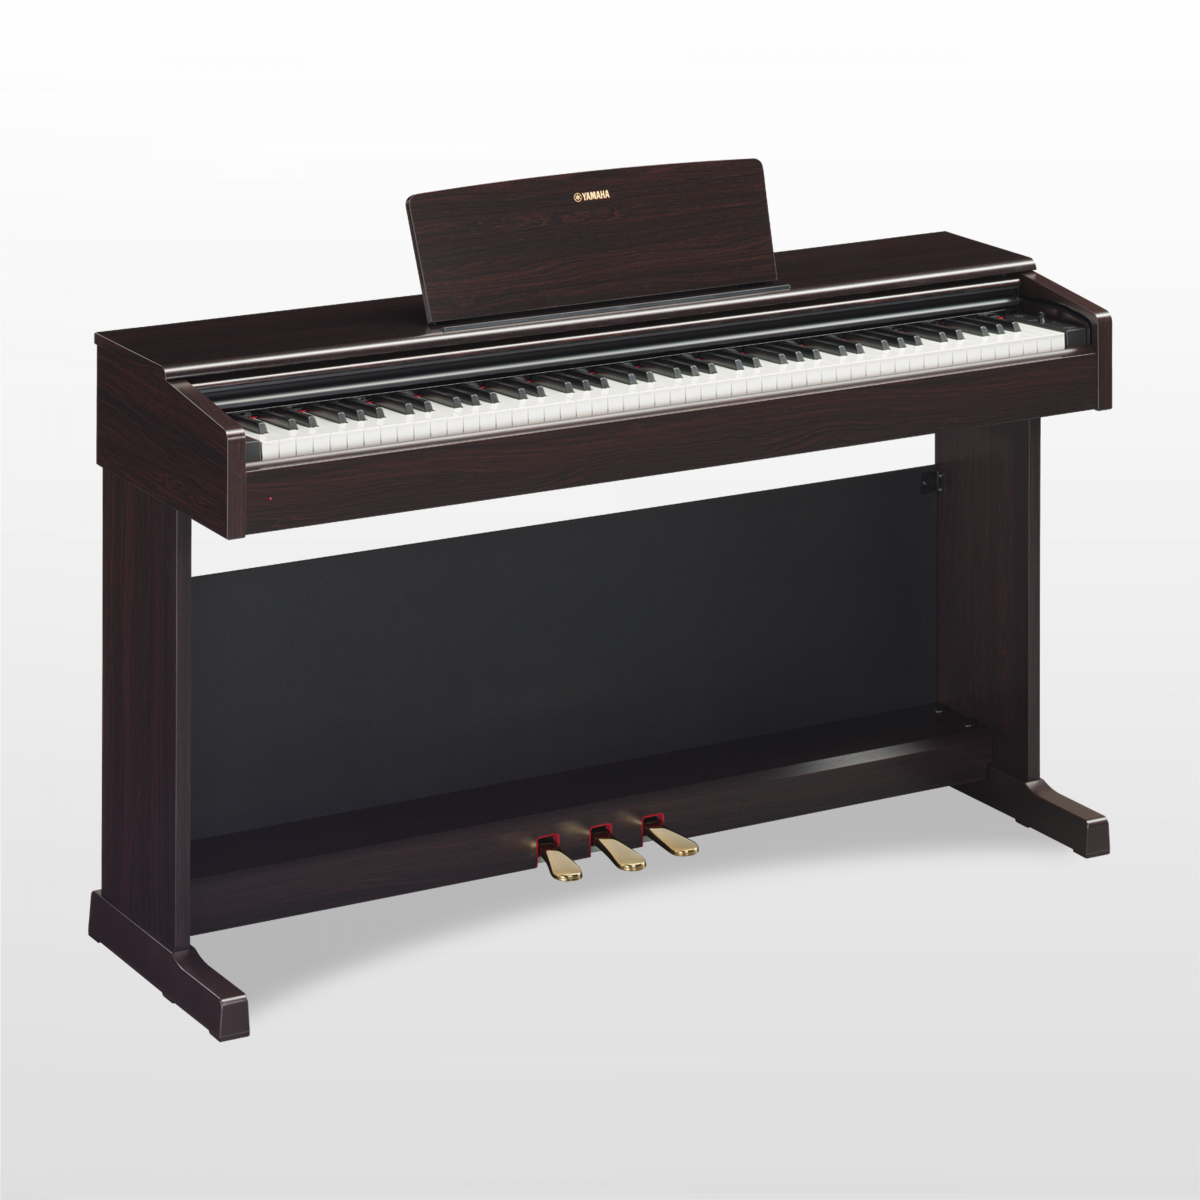 Nhận sửa chữa bảo trì đàn Piano,Organ  điện các hãng Yamaha, Korg, Roland, Casio